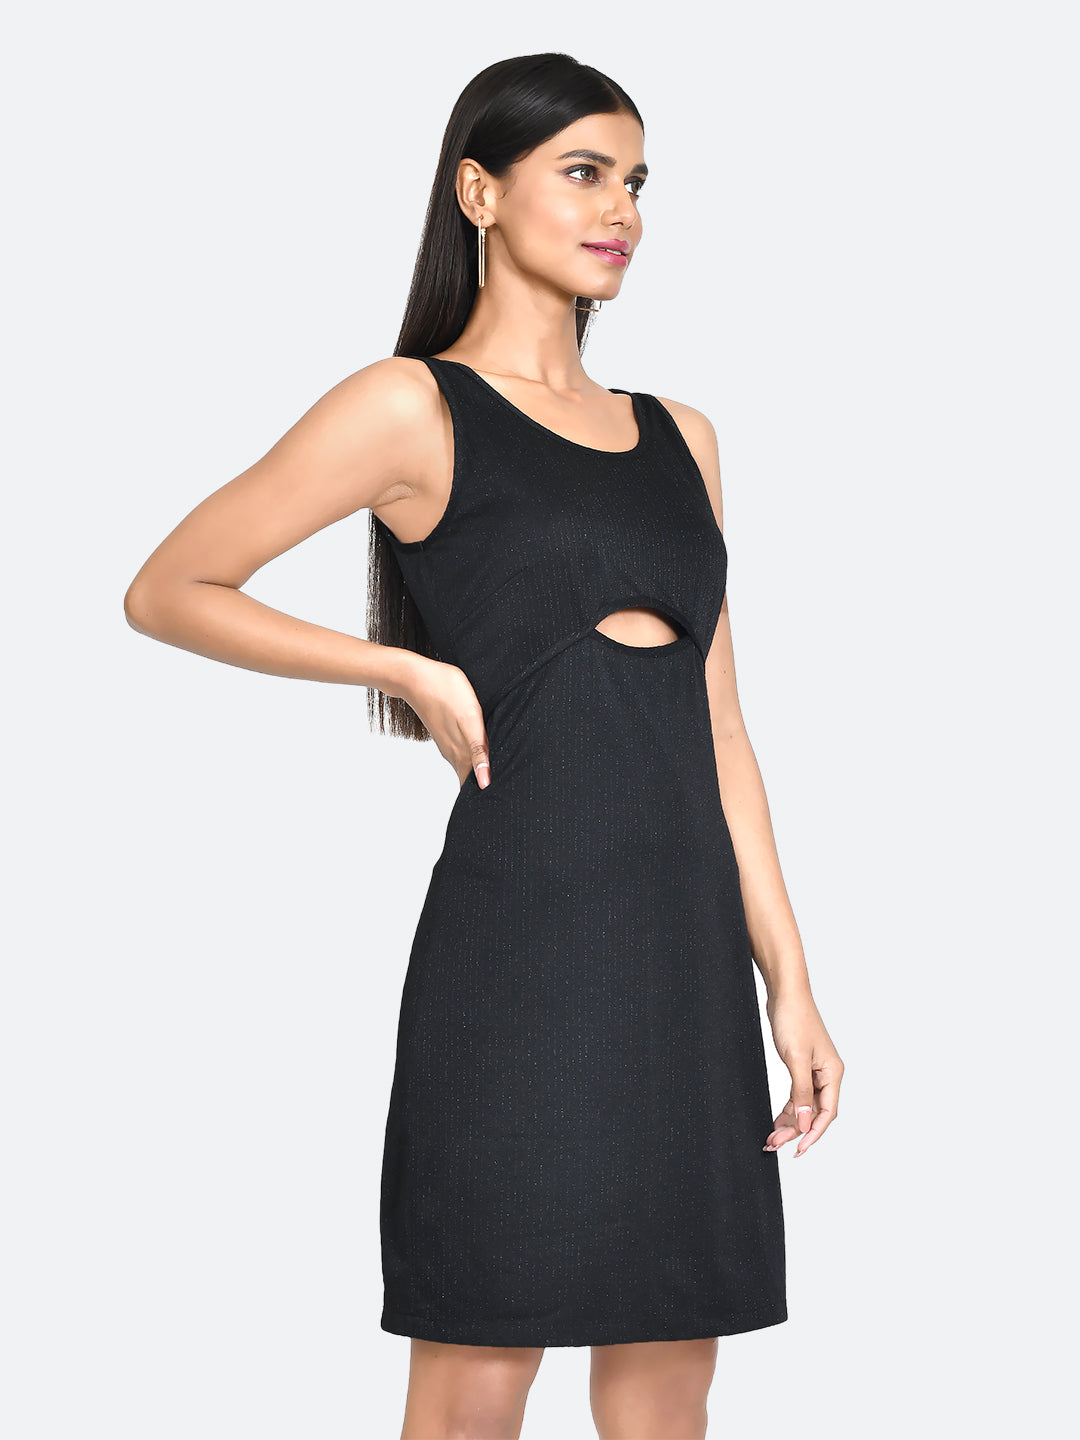 Black Embellished Cut Out Short Dress For Women